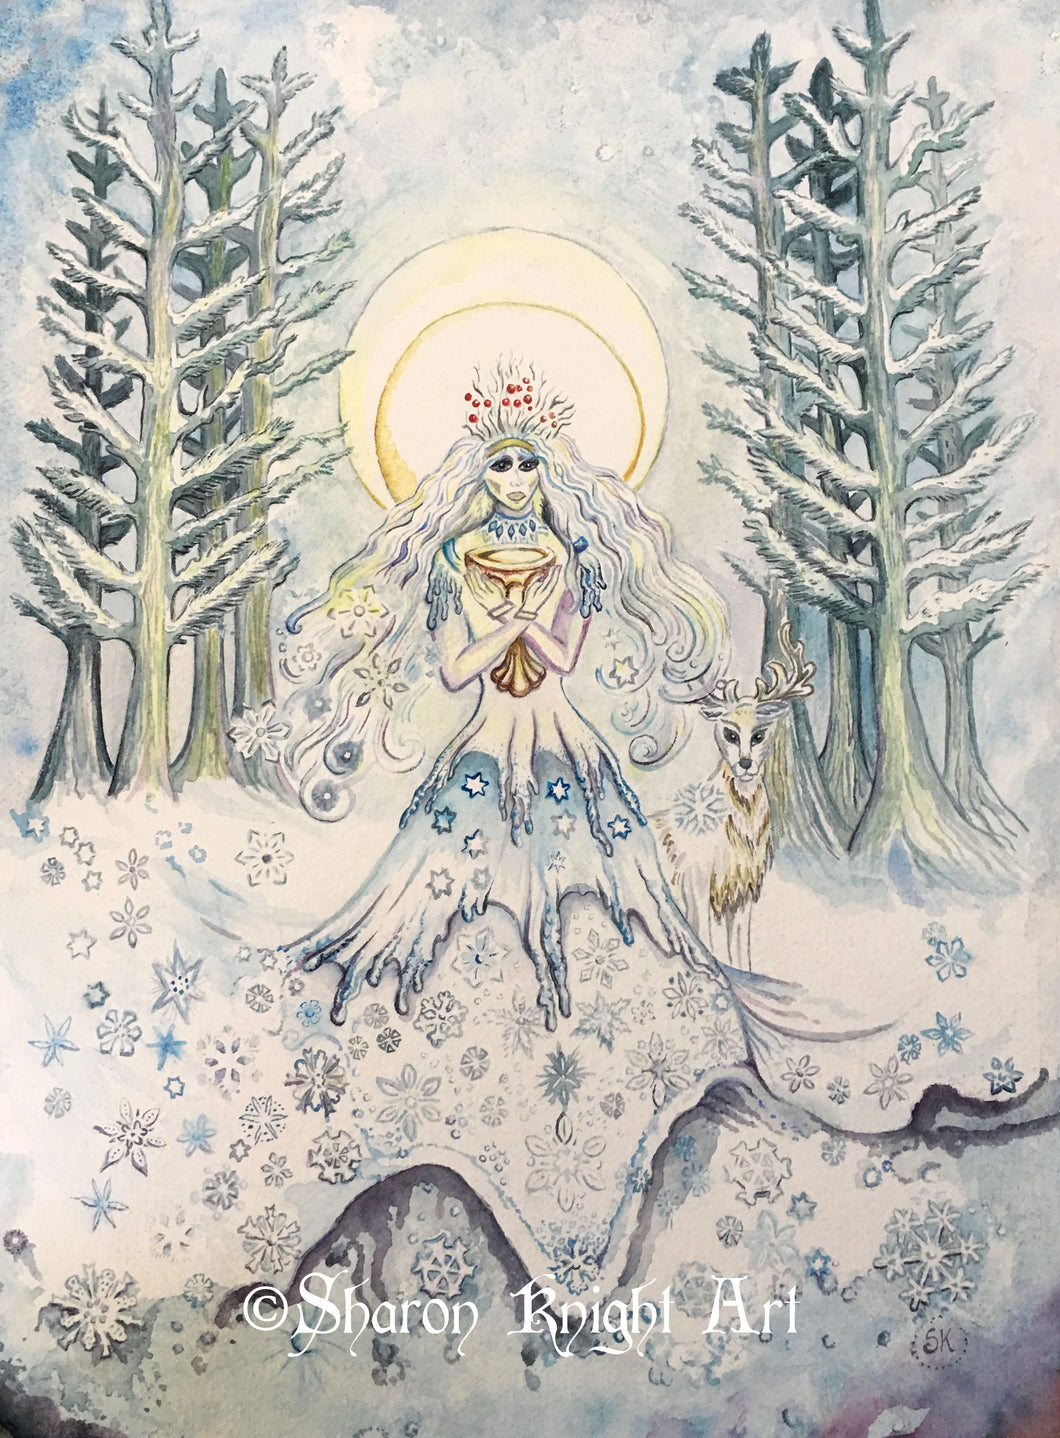 The Winter Queen - ORIGINAL 12x16